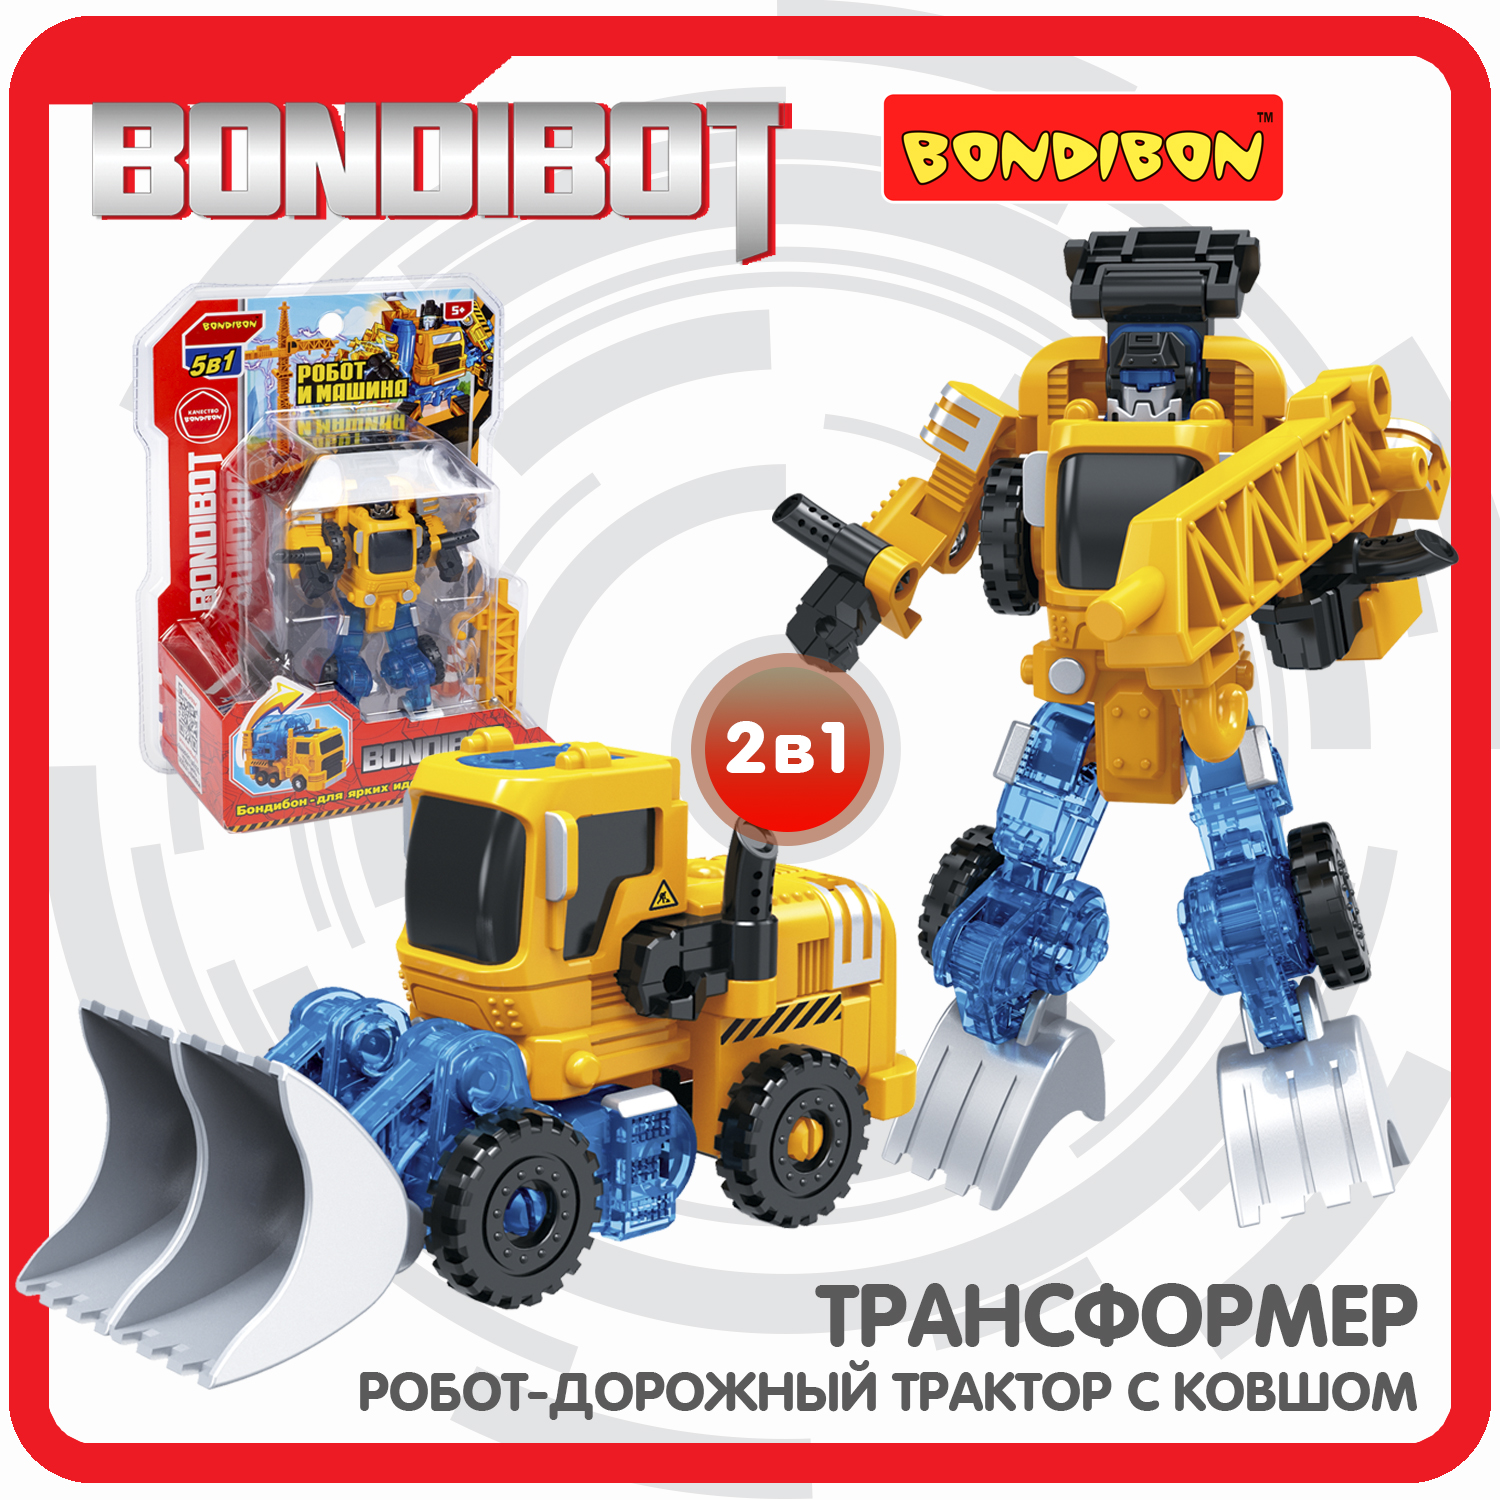 Трансформер 2в1 BONDIBOT Bondibon робот-строит.техника дорож.трактор с ковшом CRD20x15x8см